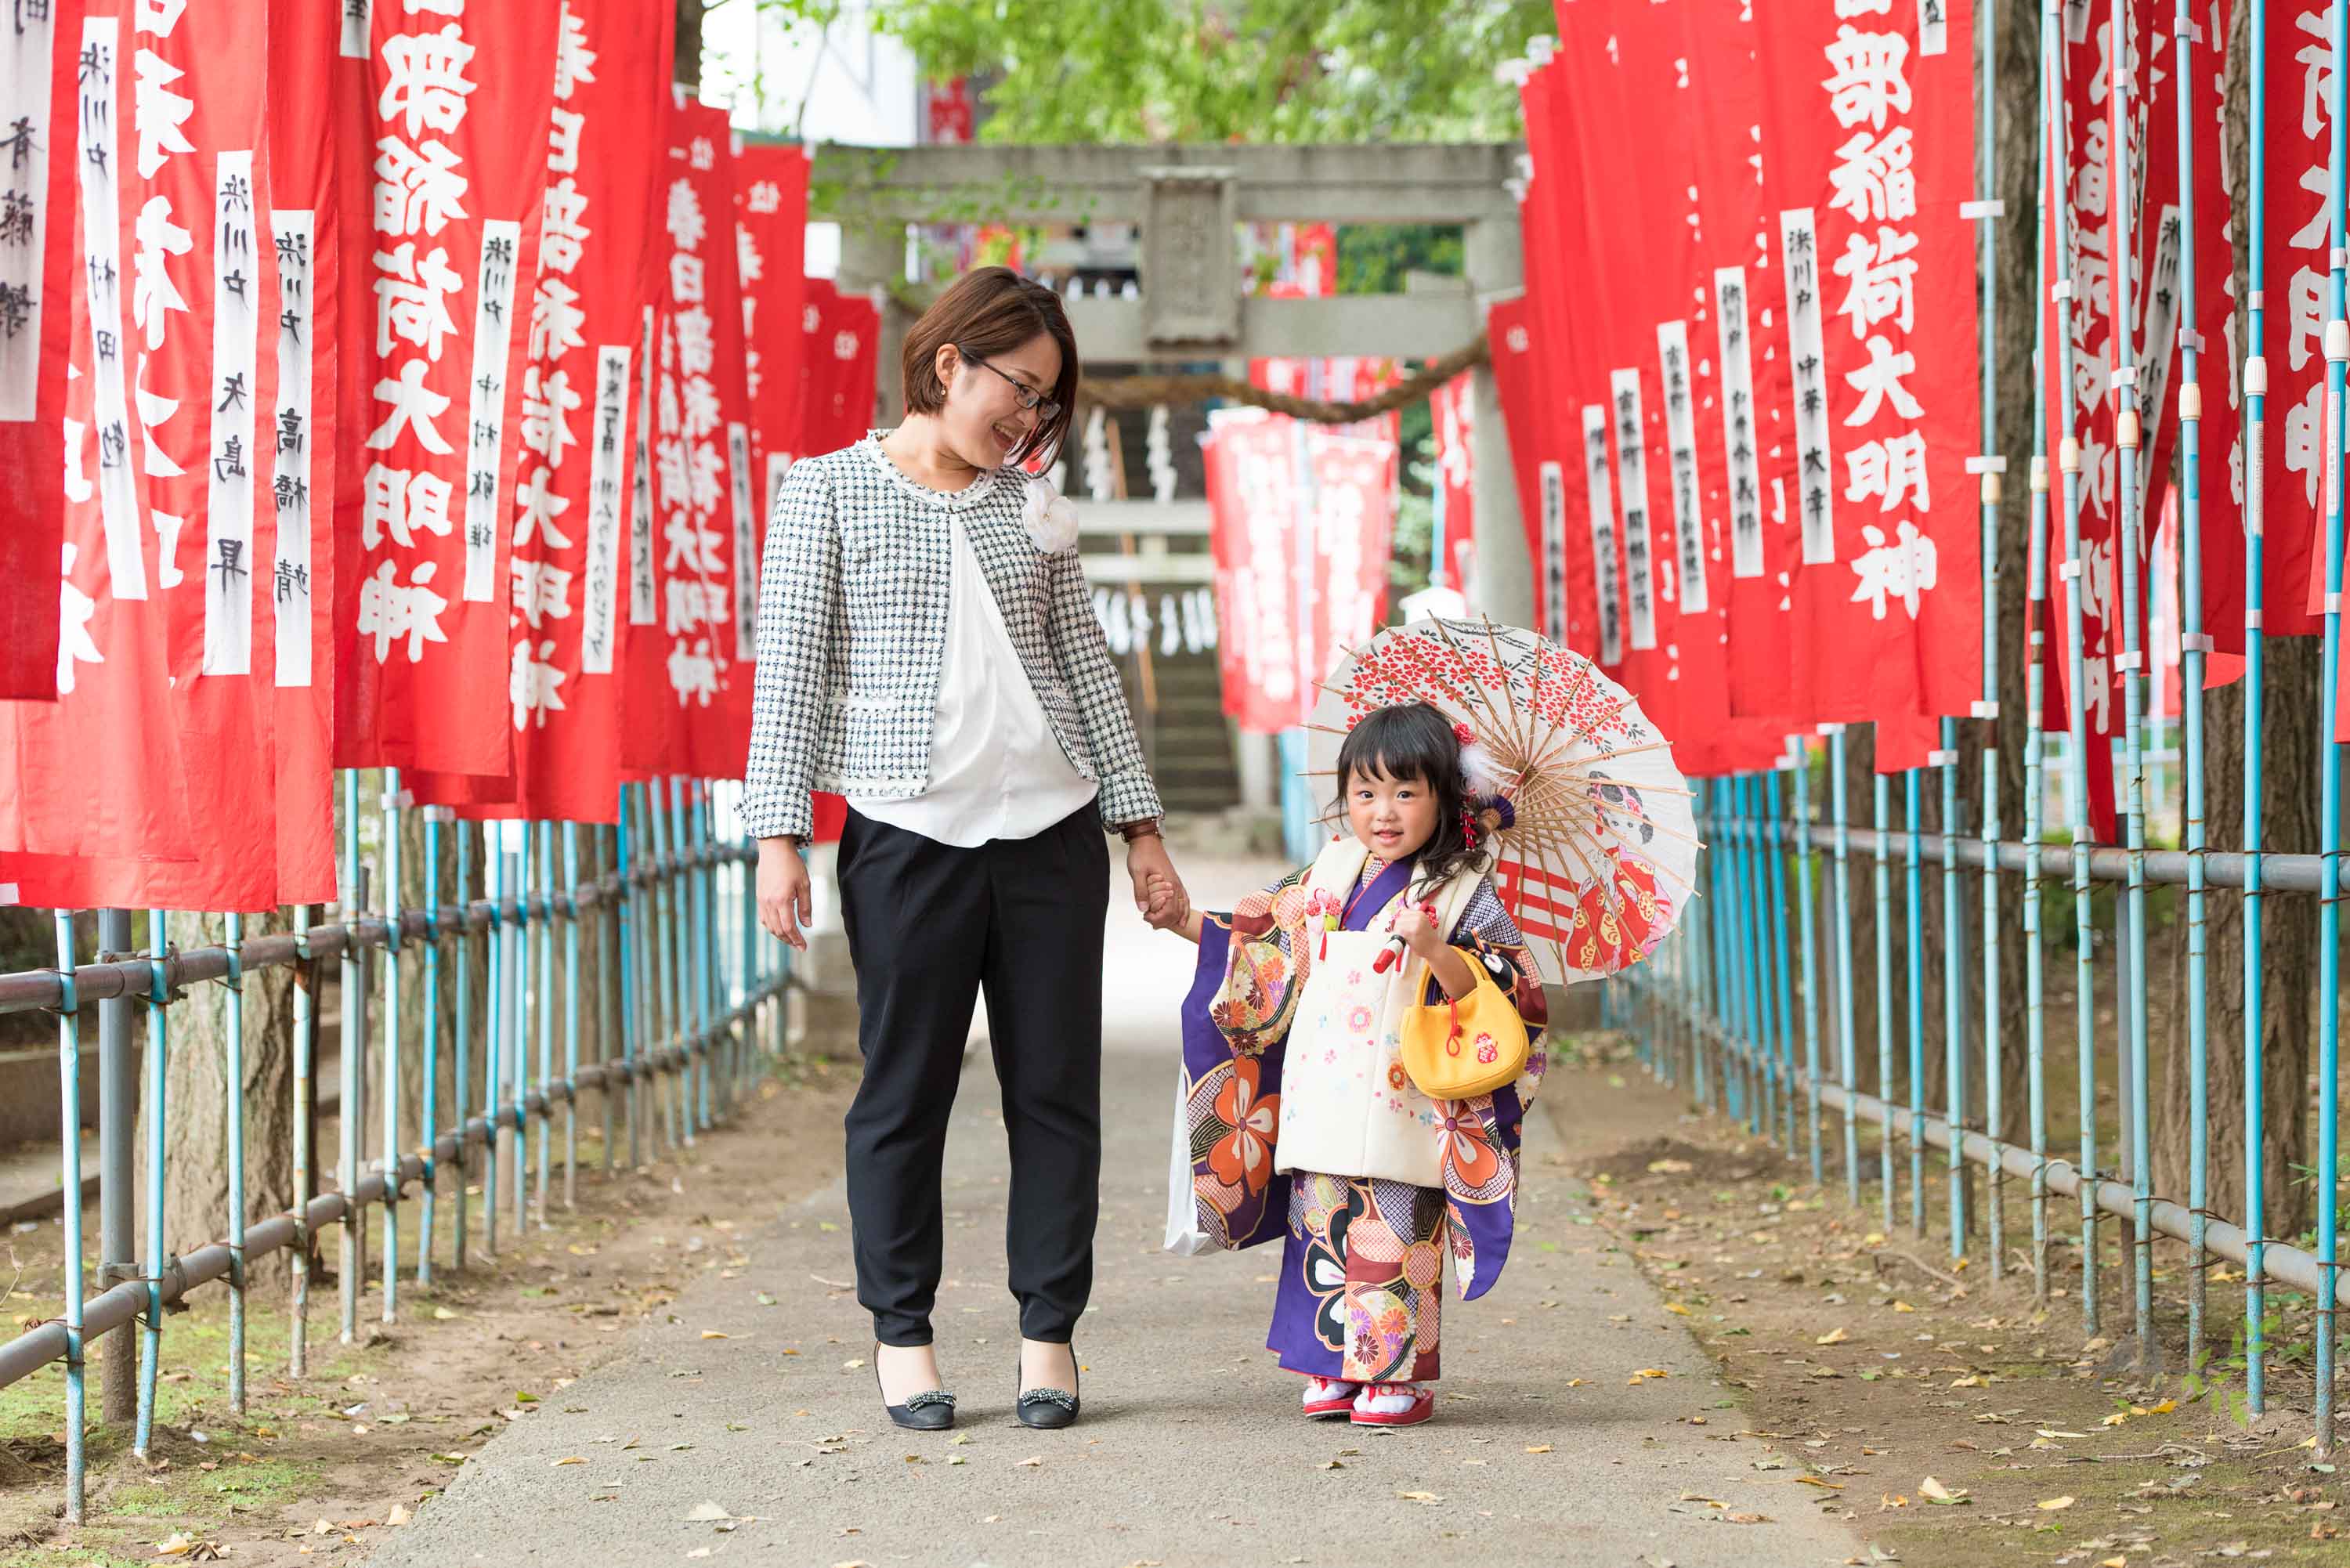 赤い神社のぼりの参道に立つ小さな和傘をさした七五三の着物姿の女の子と女性